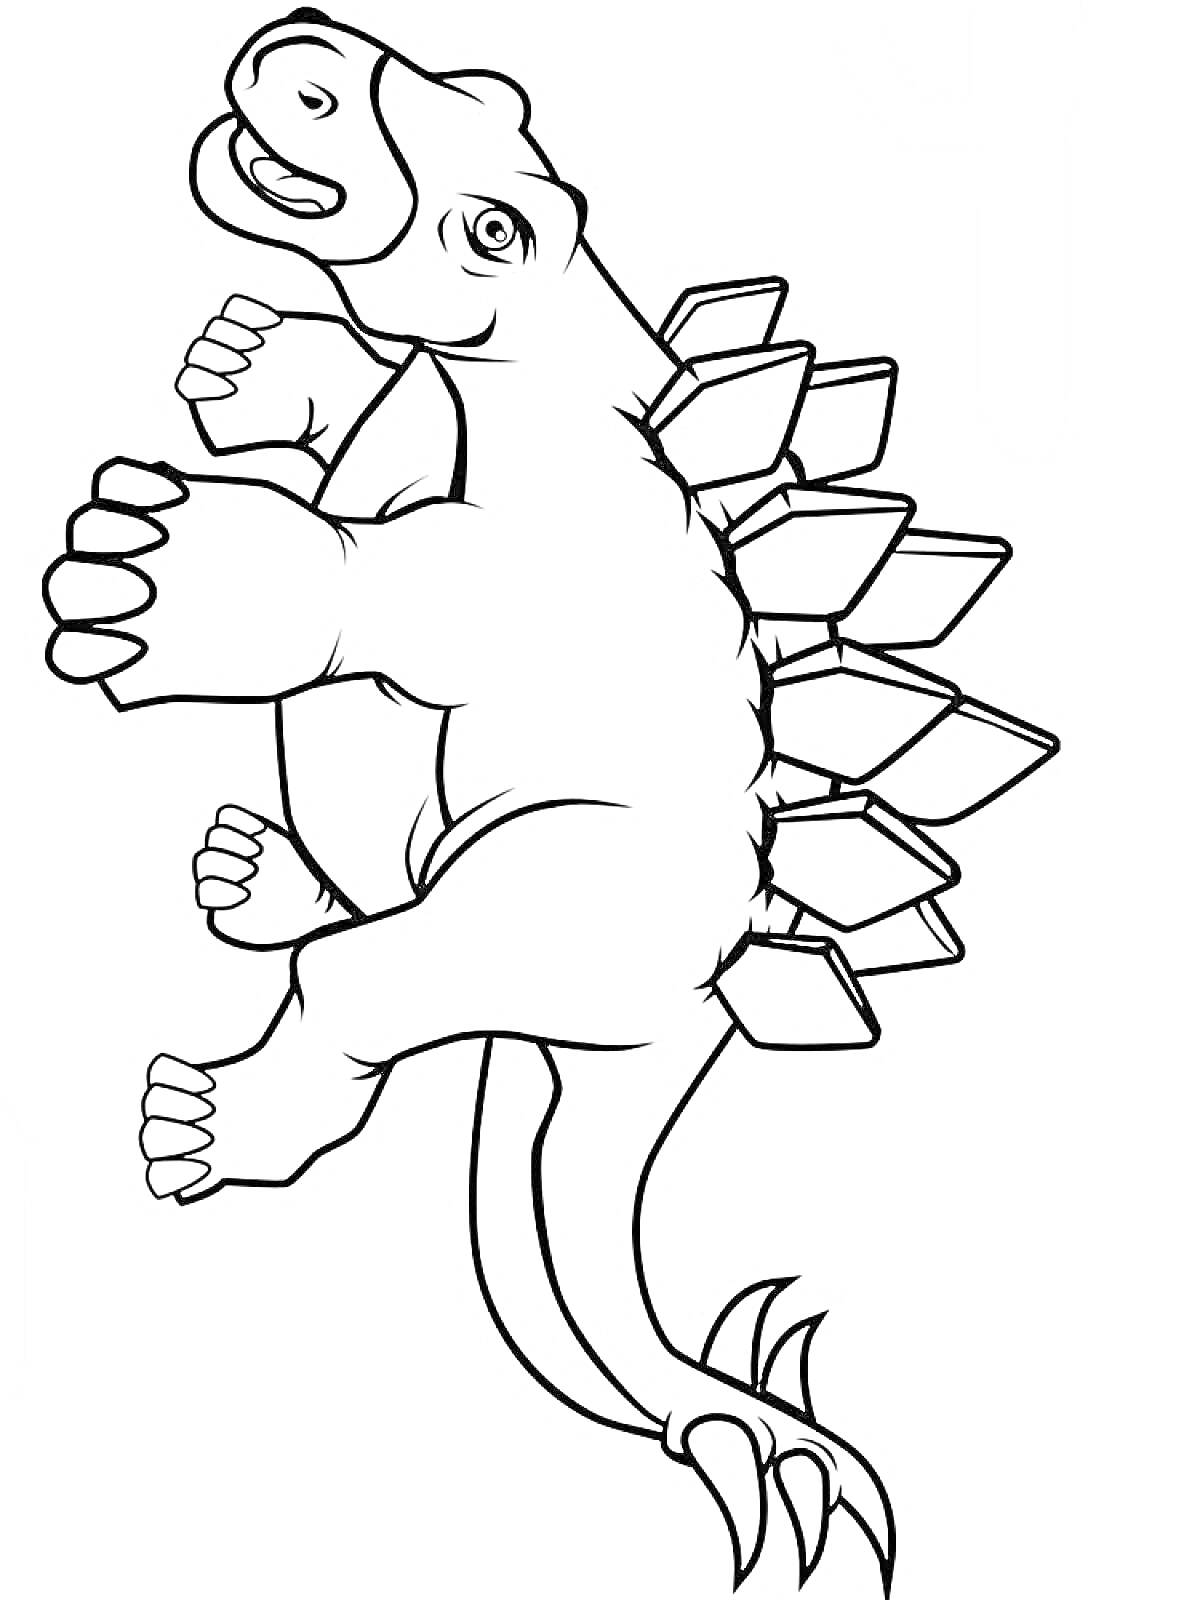 Динозавр с пластинами на спине и шипастым хвостом